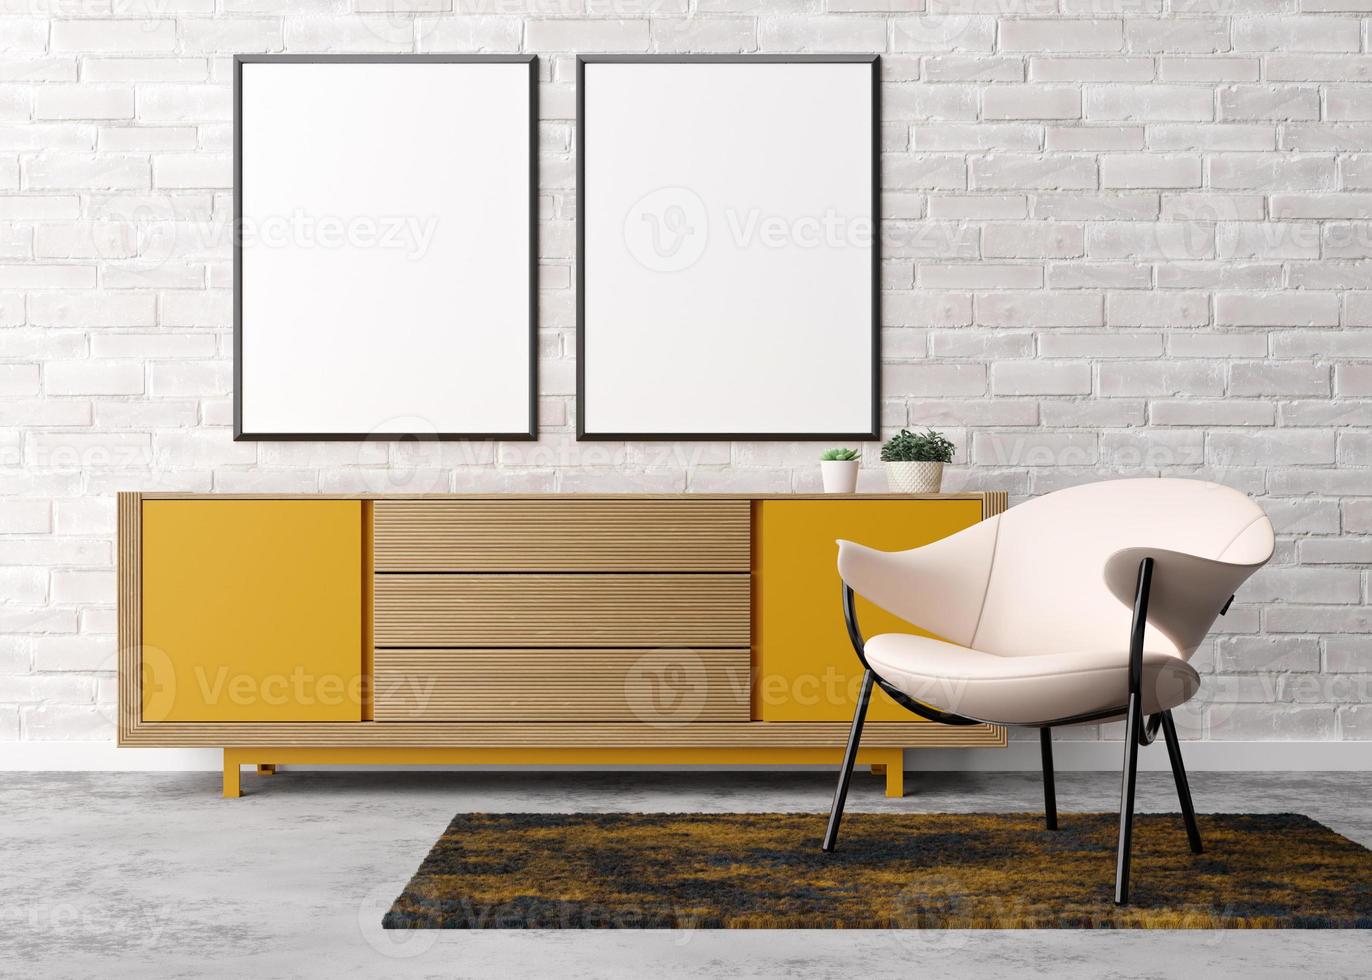 deux cadres photo verticaux vides sur un mur de briques blanches dans un salon moderne. maquette d'intérieur dans un style contemporain. espace libre pour photo, affiche. fauteuil, buffet jaune, plantes. rendu 3d.